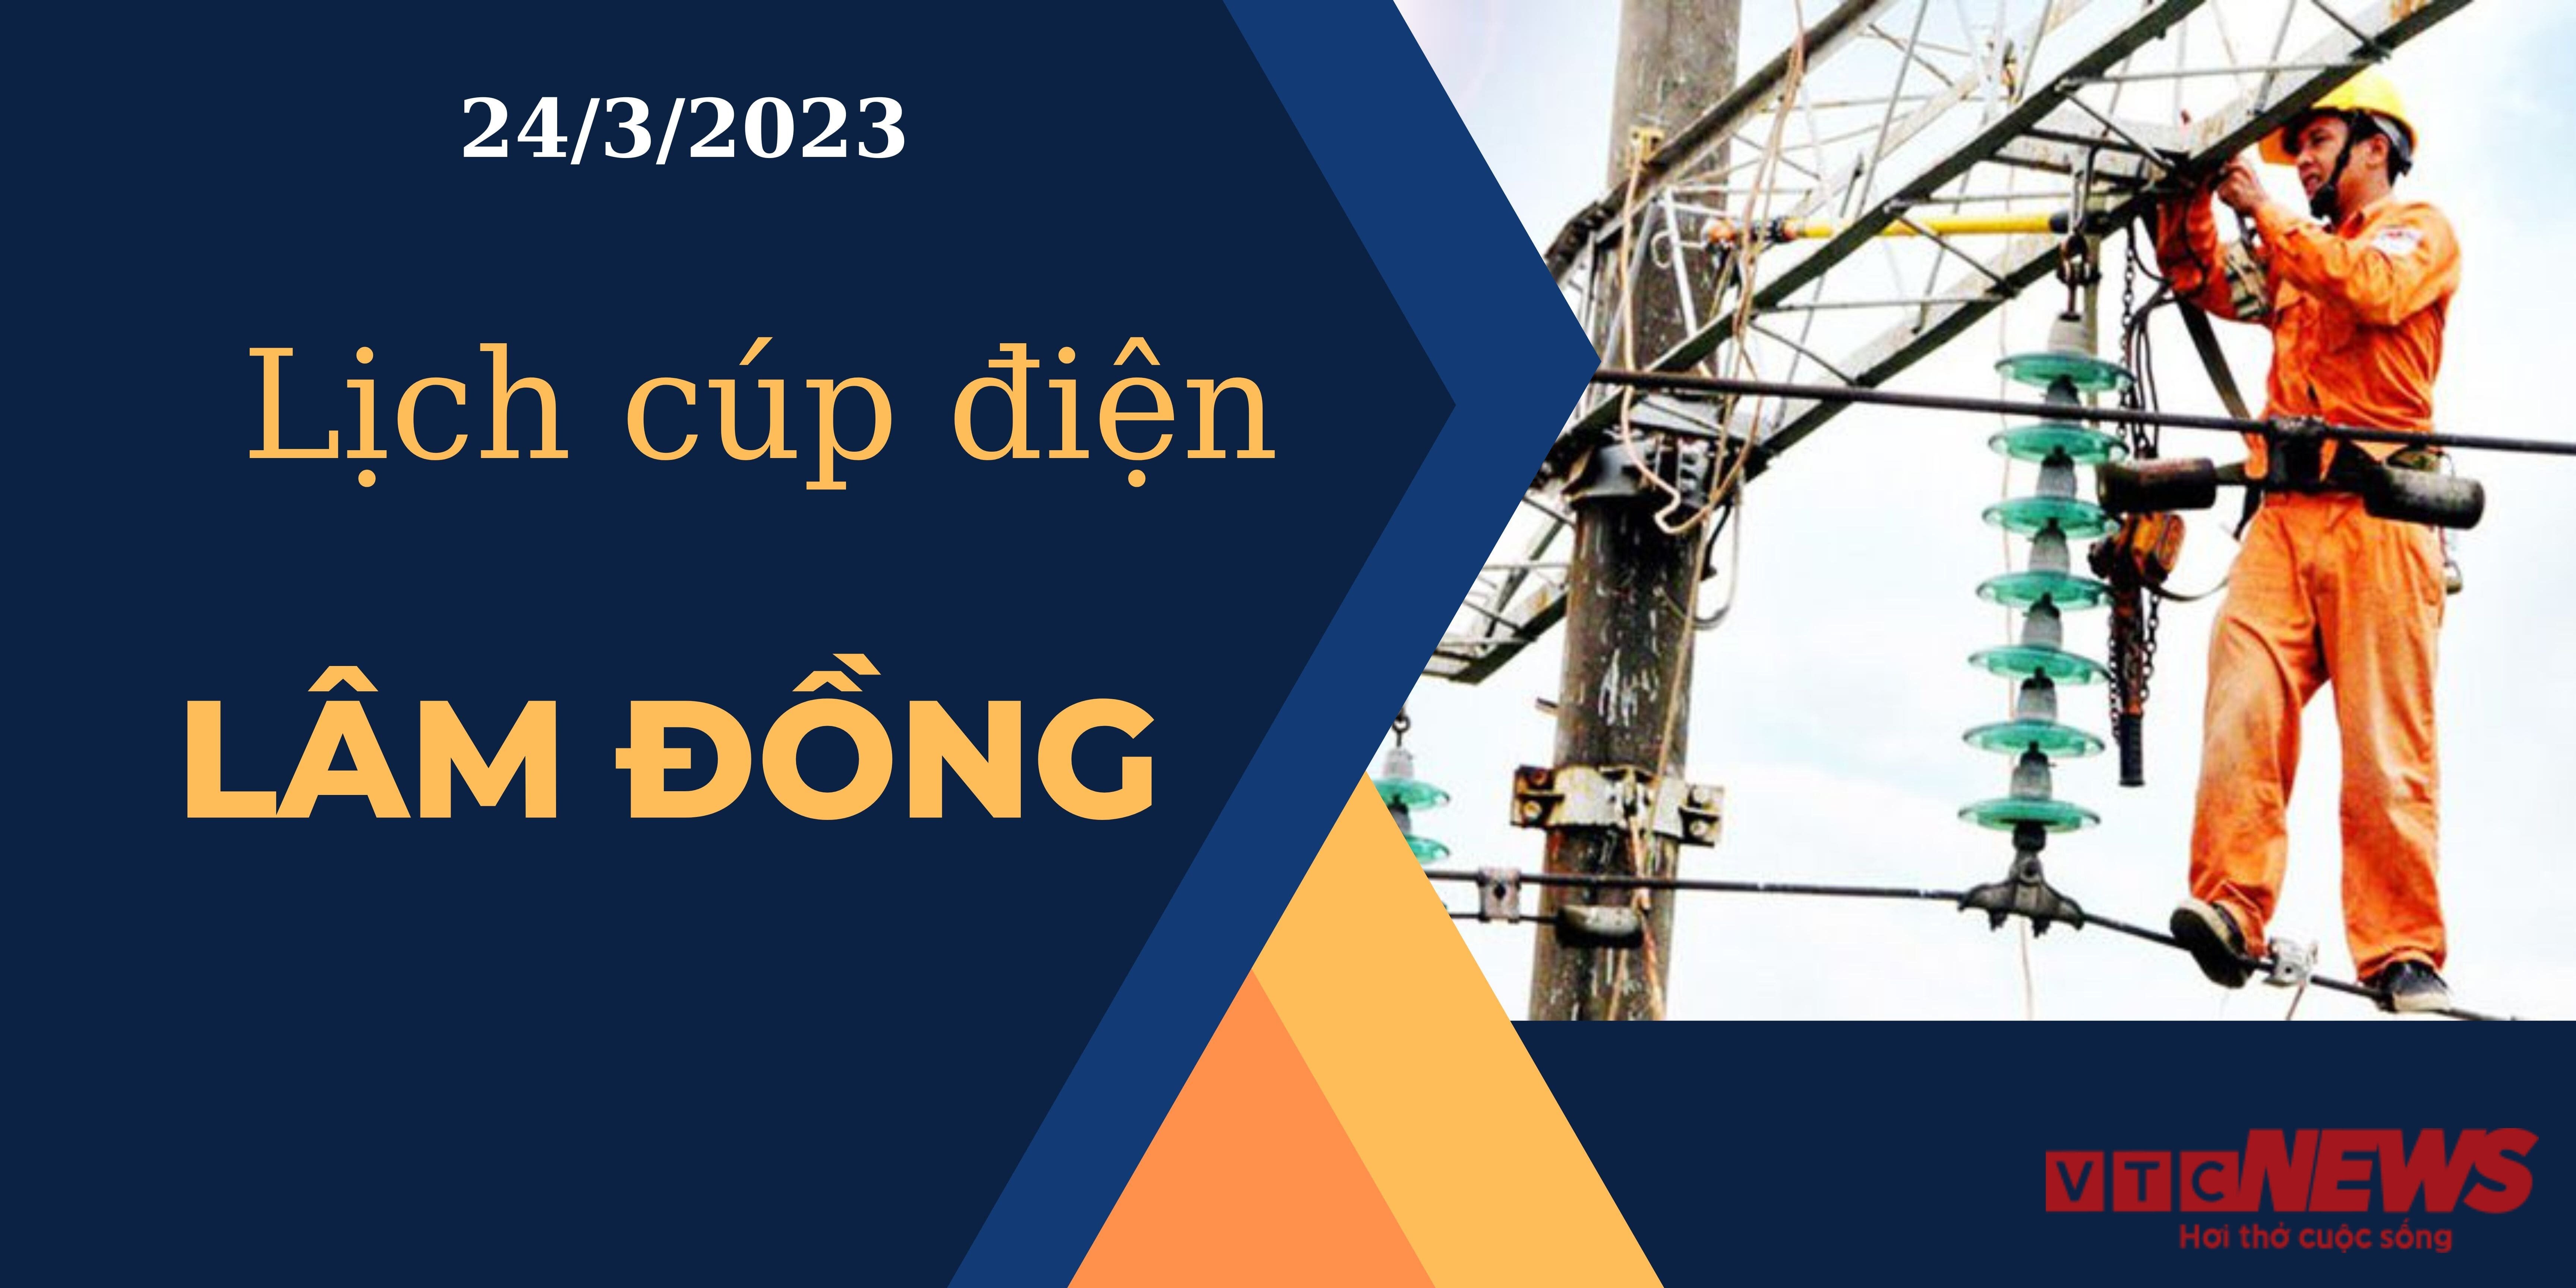 Lịch cúp điện hôm nay tại Lâm Đồng ngày 24/03/2023 - 1